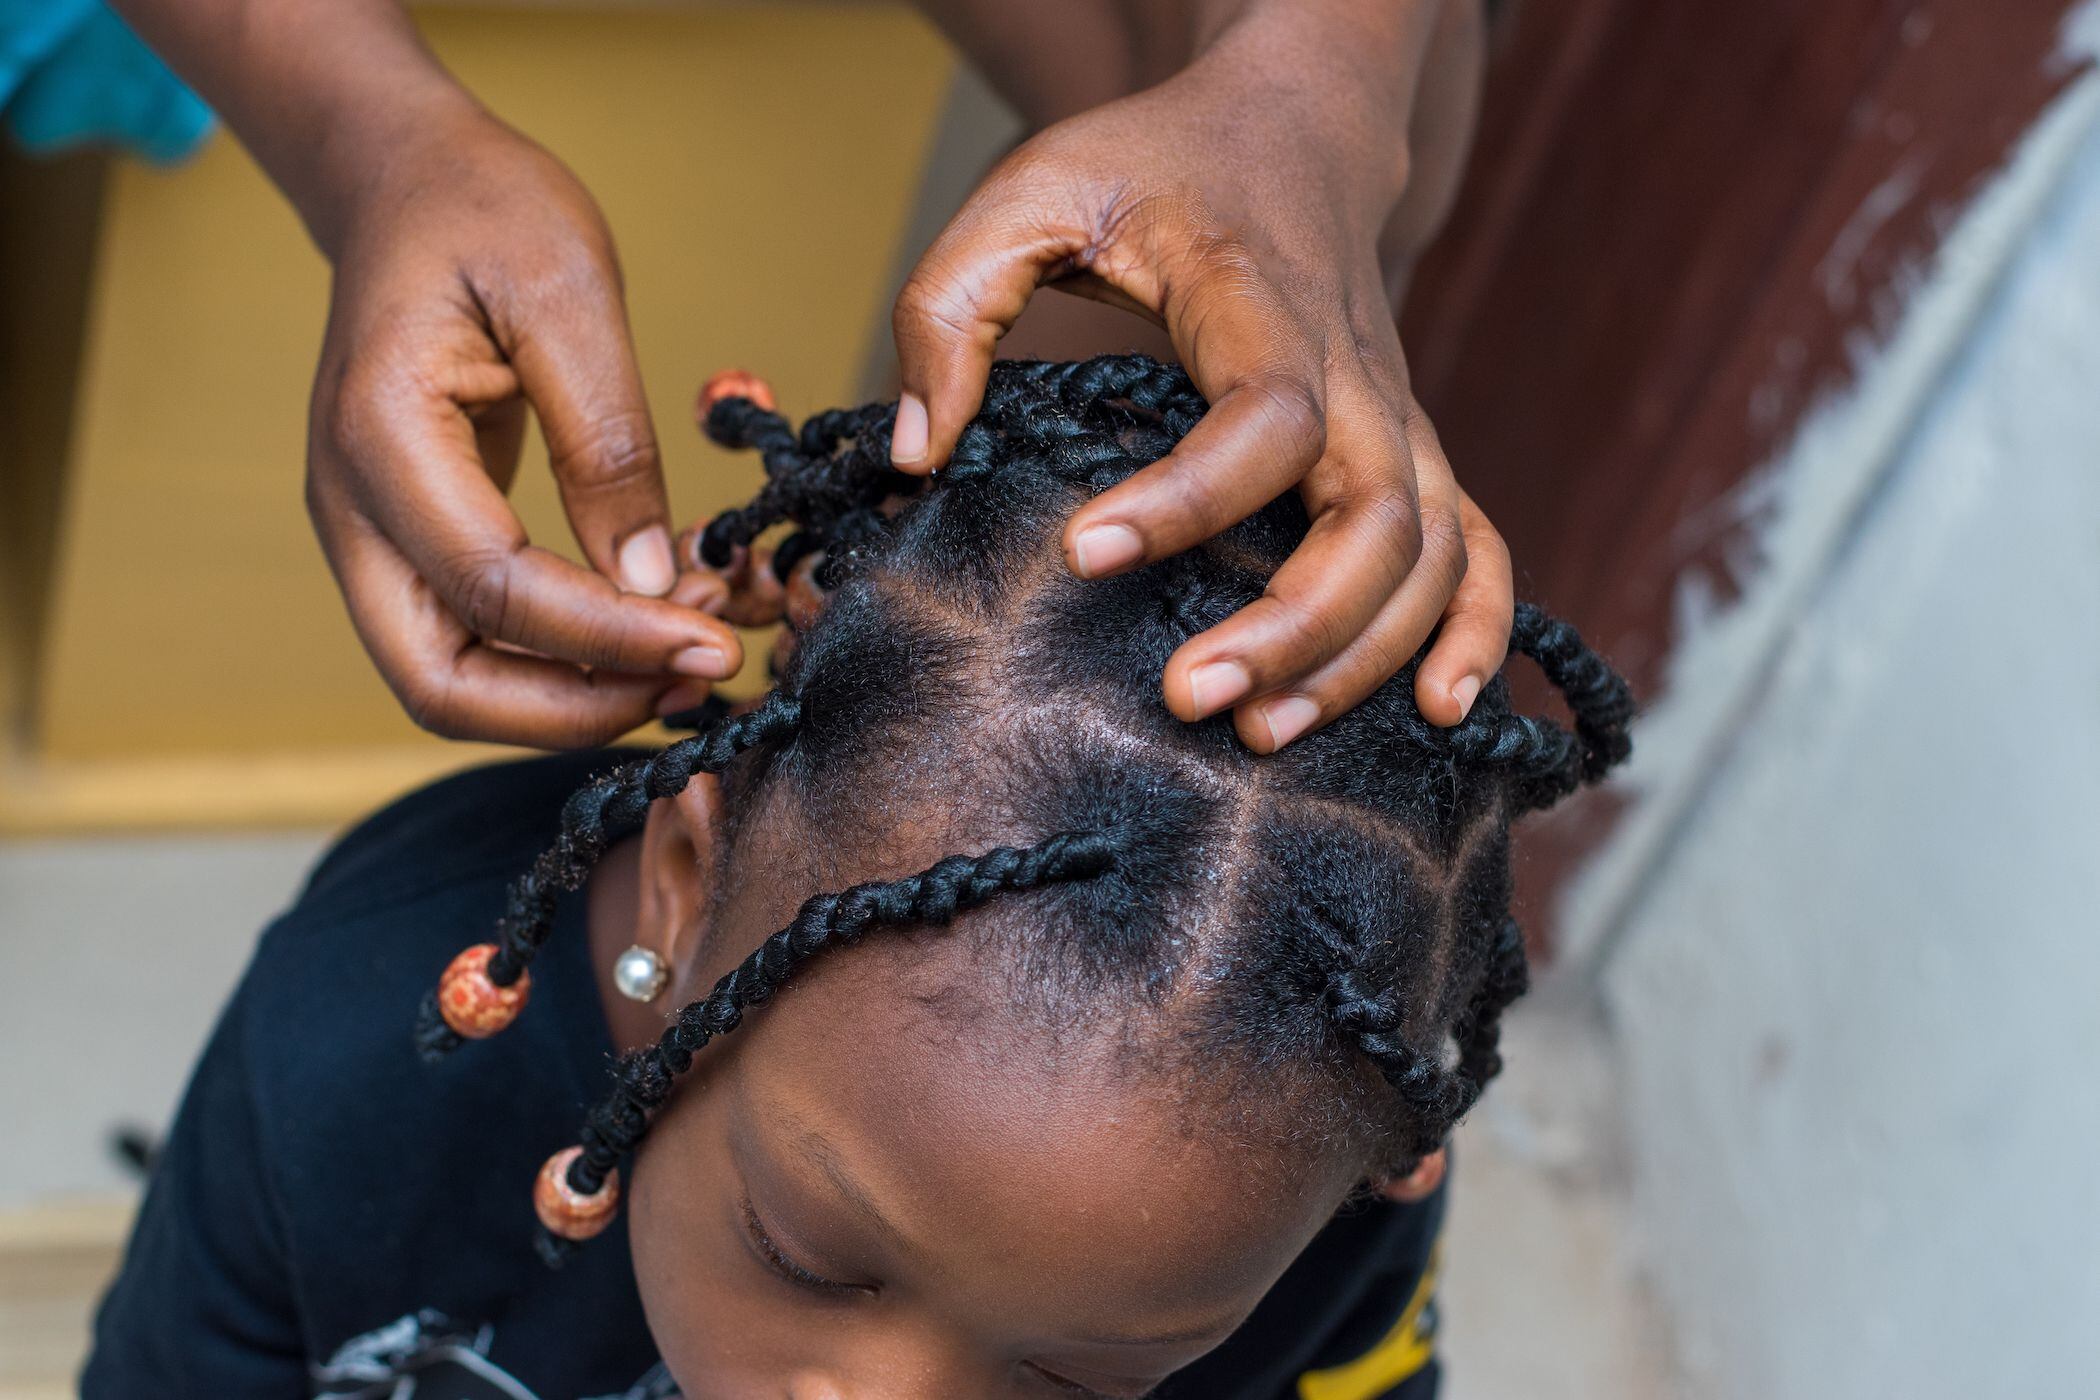 La denunciante aseguró que ella y su hija fueron humilladas públicamente con las referencias de la educadora al estilo de peinado que lució su hija en el acto cívico (imagen con fines ilustrativos). Fotografía: Shutterstock